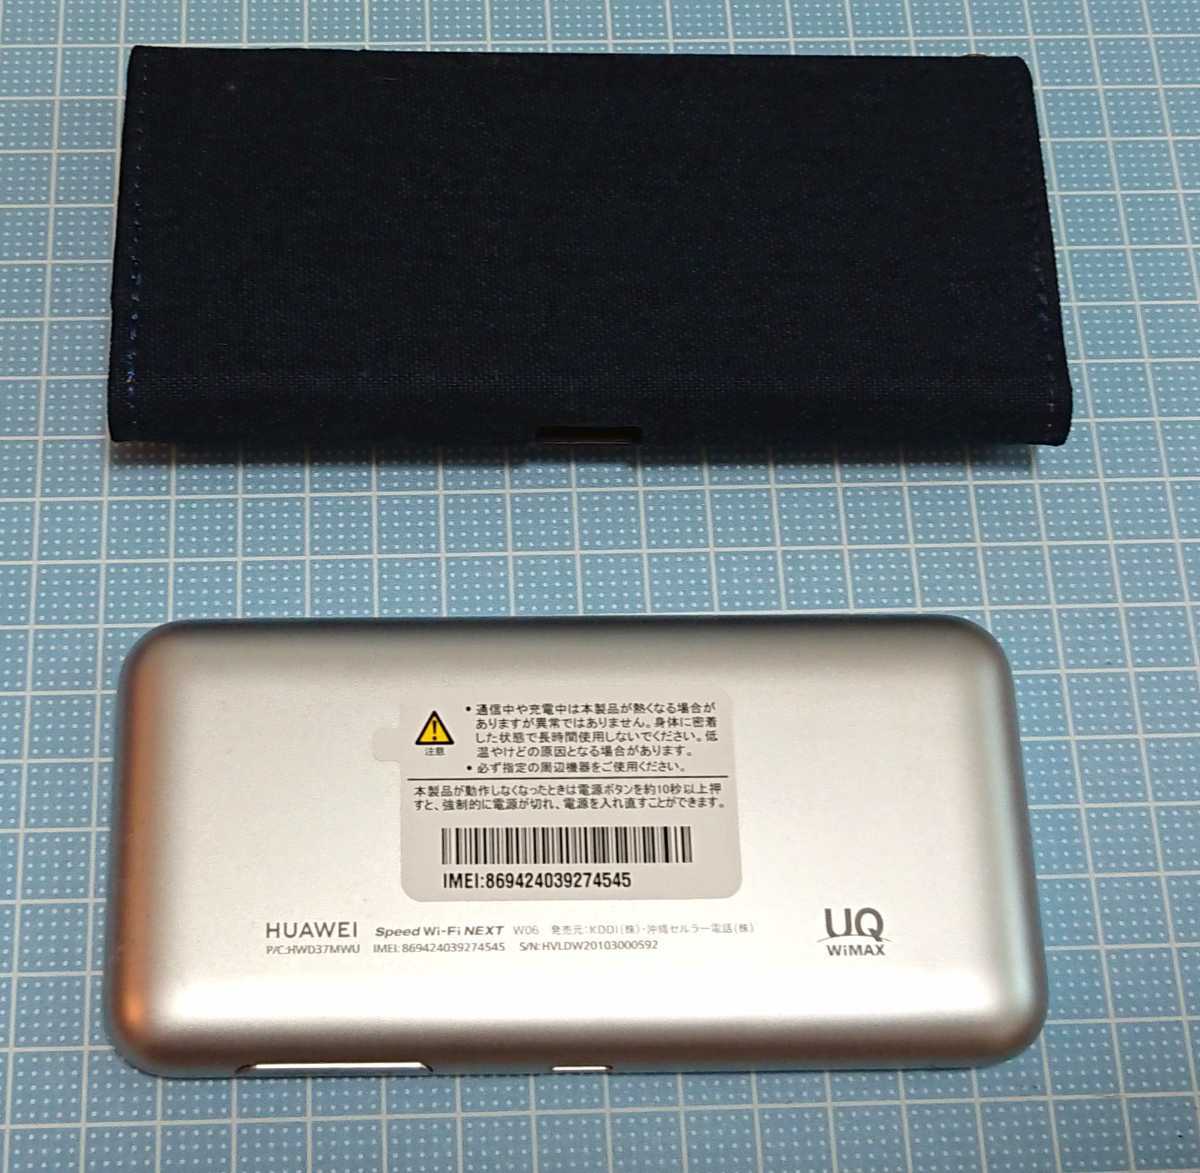 【送料無料】UQ WiMAX2+ Speed Wi-Fi NEXT W06 ホワイト モバイルルーター と手帳型 ケース（紺色）のセット